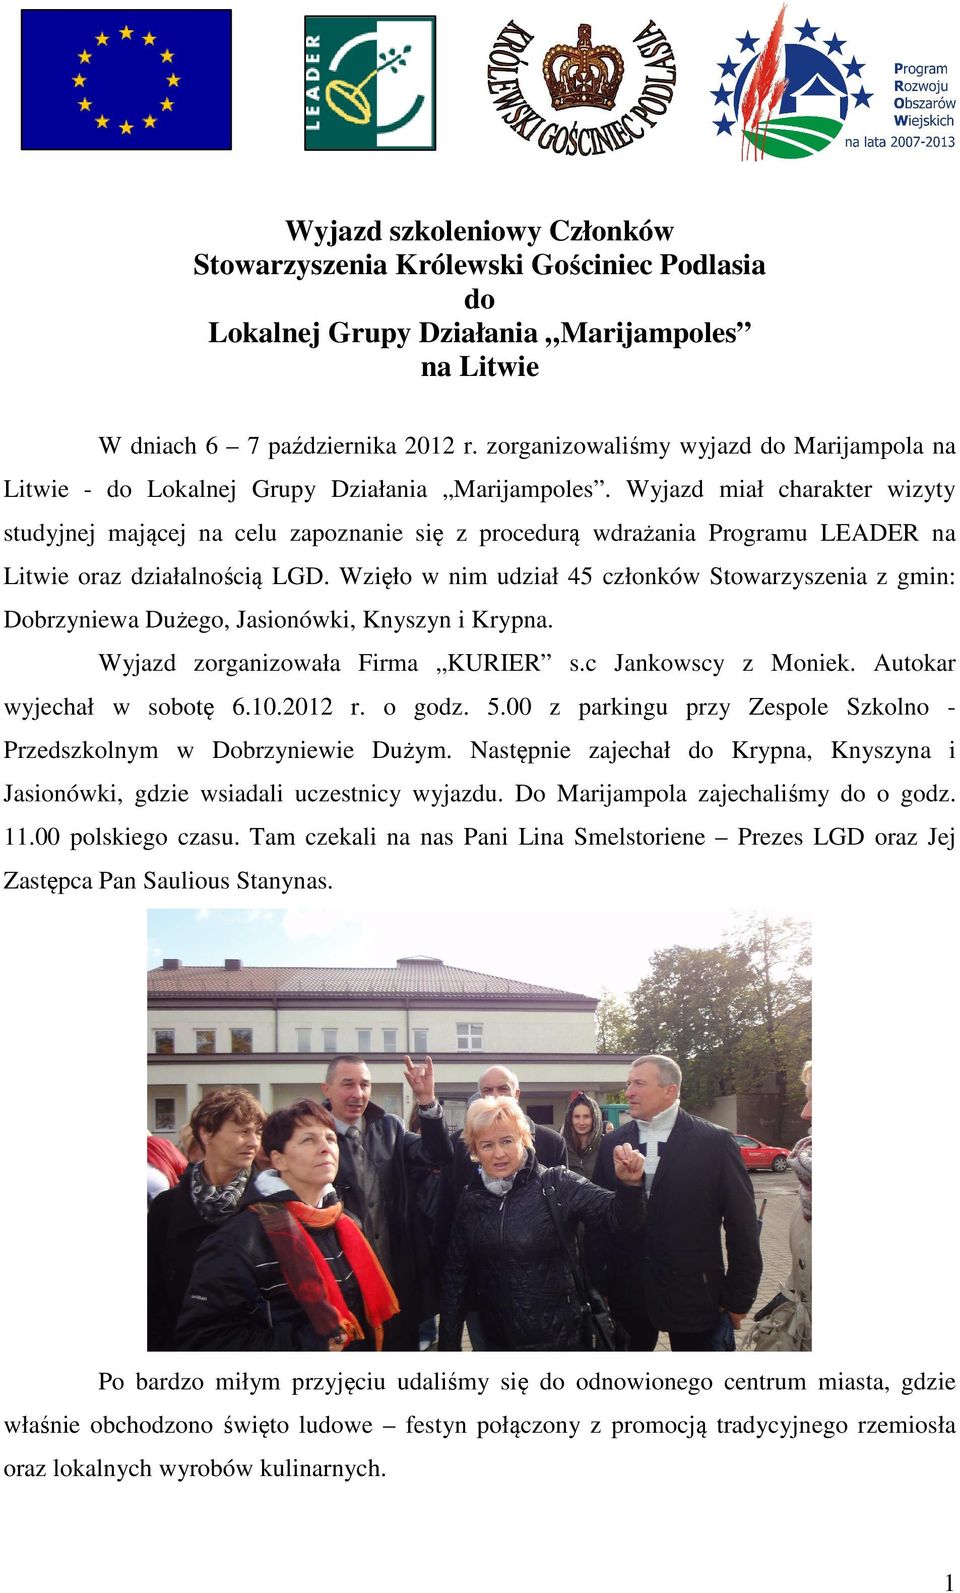 Wyjazd miał charakter wizyty studyjnej mającej na celu zapoznanie się z procedurą wdrażania Programu LEADER na Litwie oraz działalnością LGD.